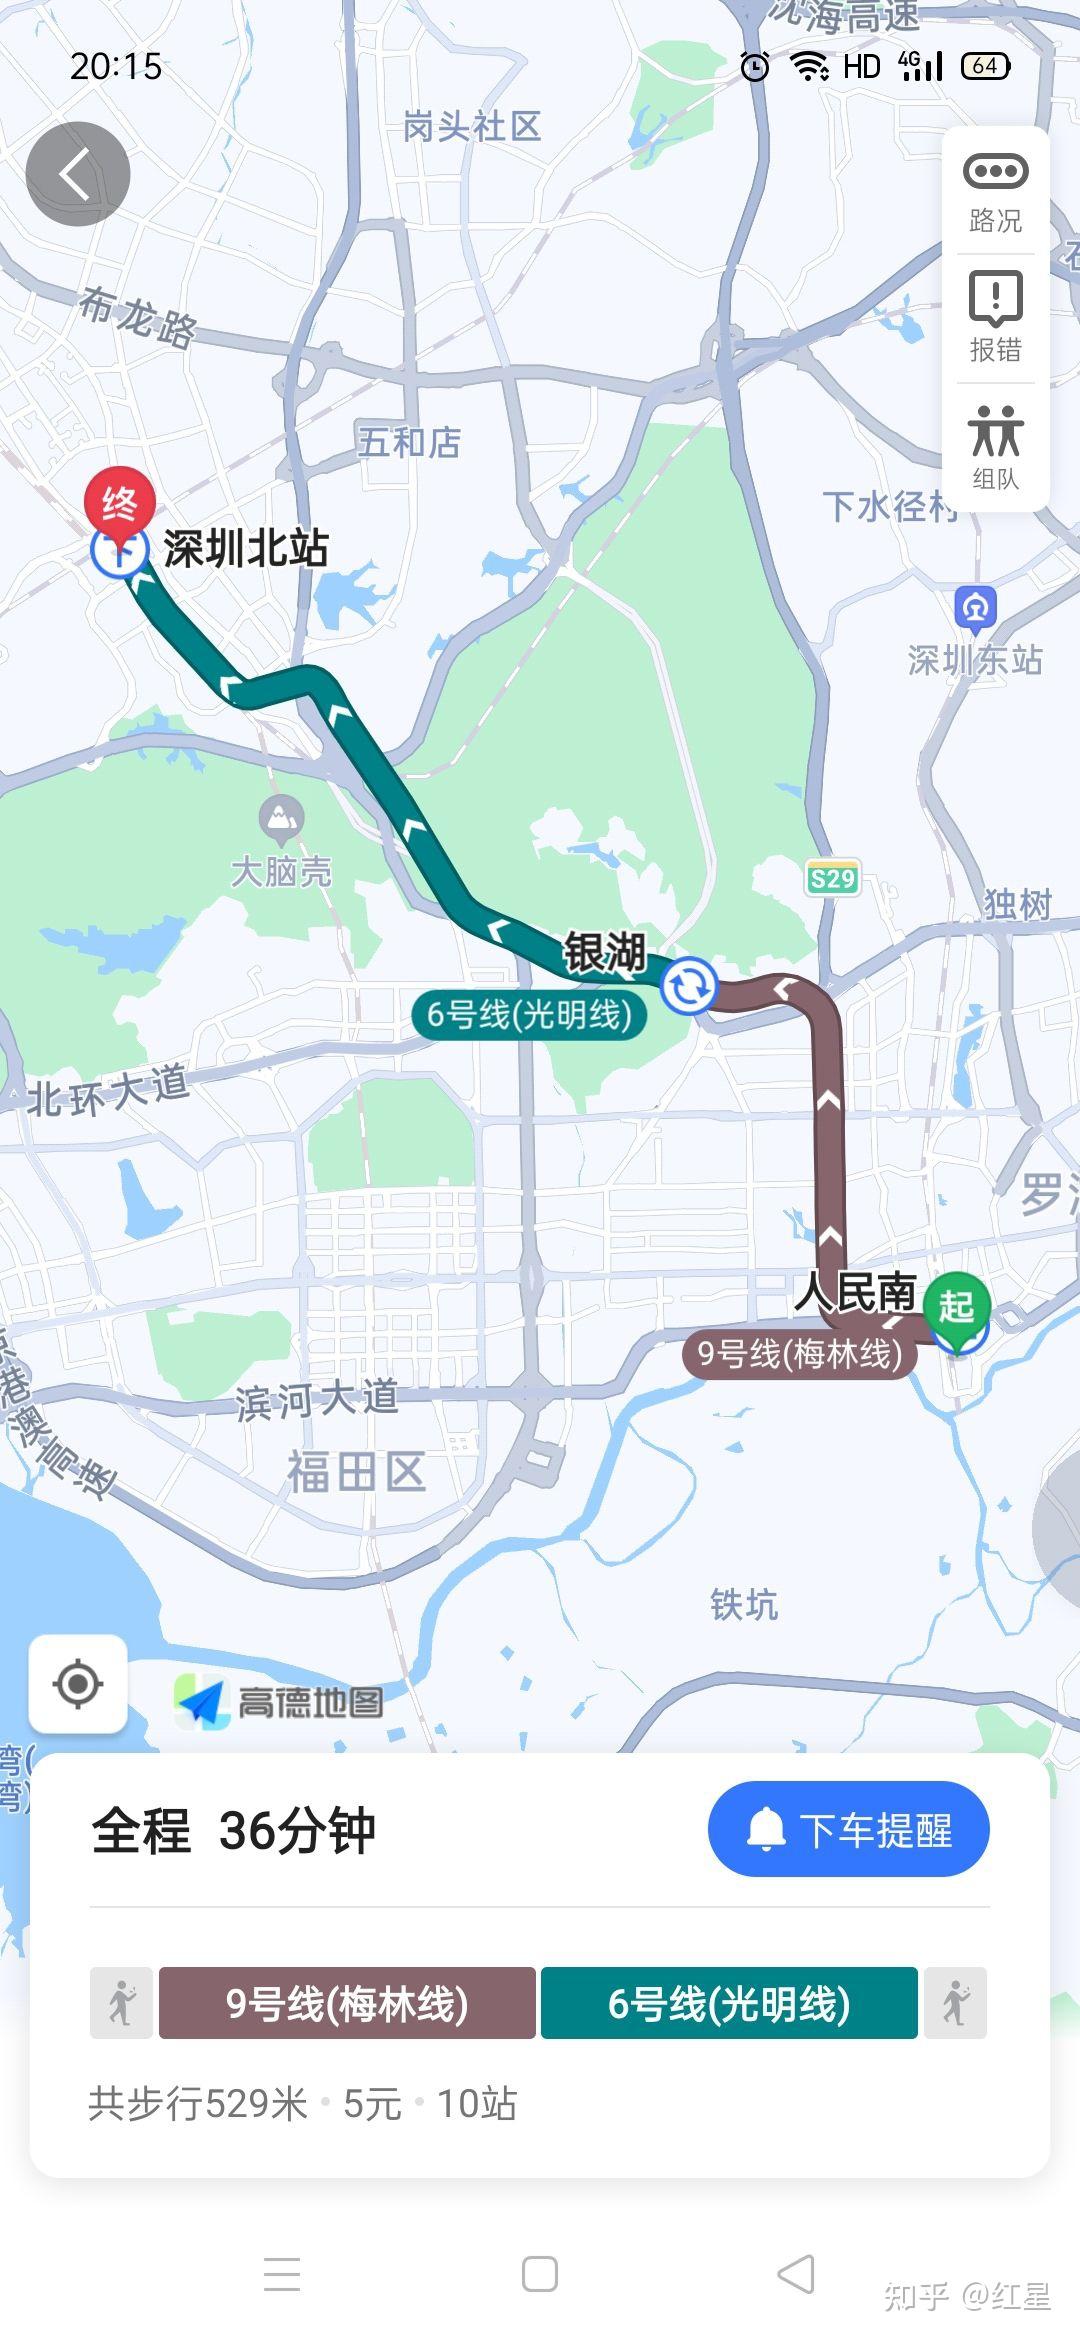 深圳站到深圳北站换乘一个小时二十分钟够吗? 